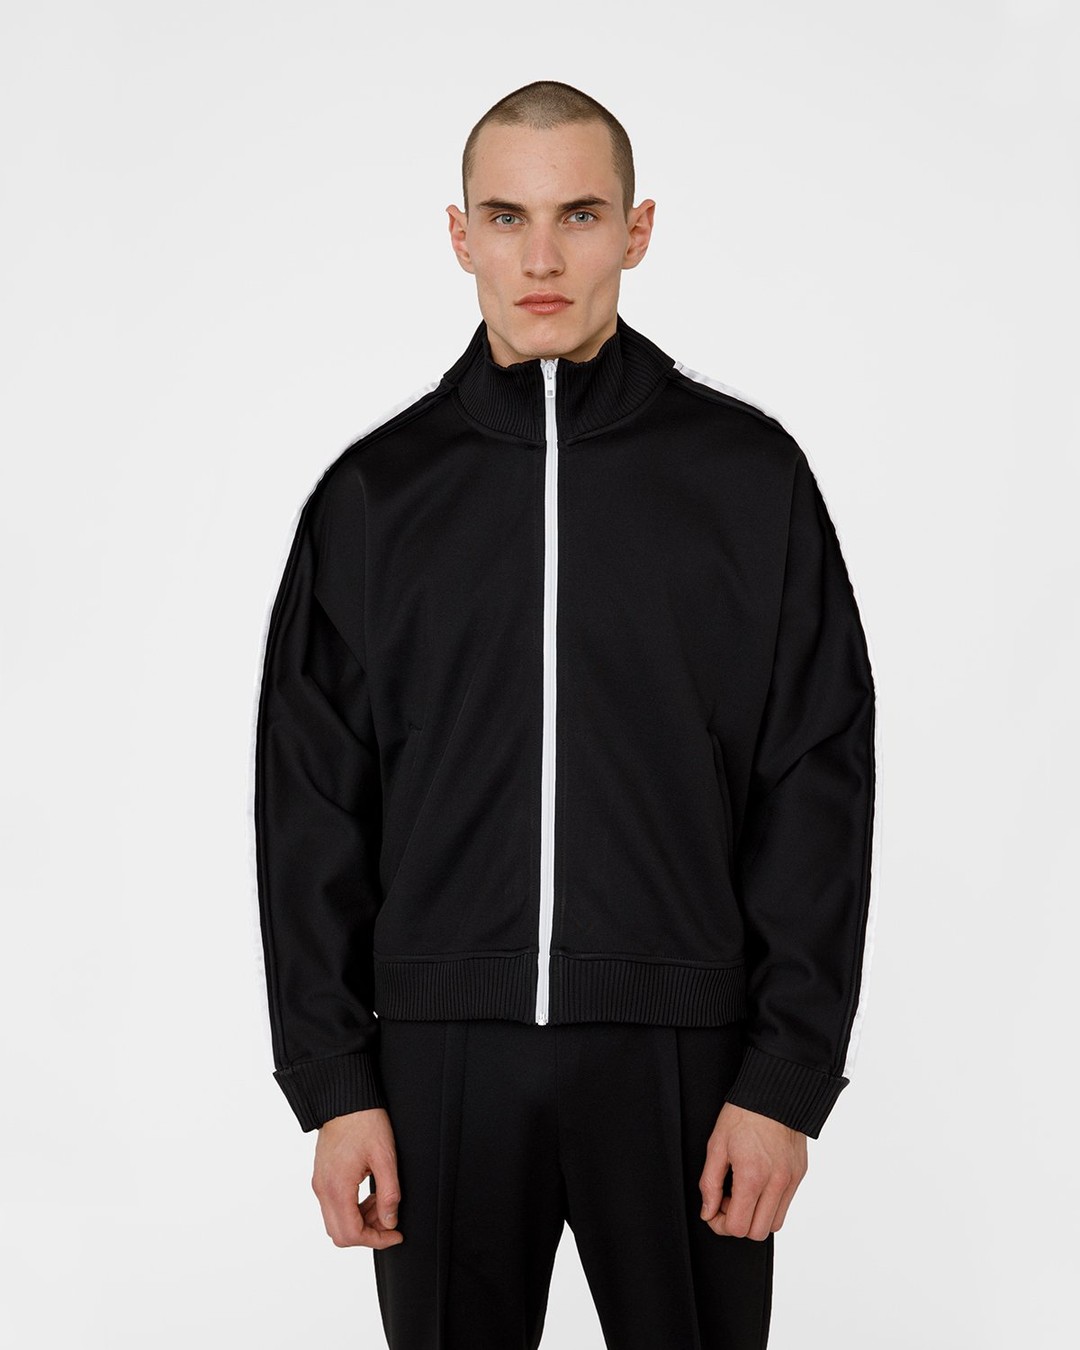 Maison Margiela – Track Jacket - Outerwear - Black - Image 2